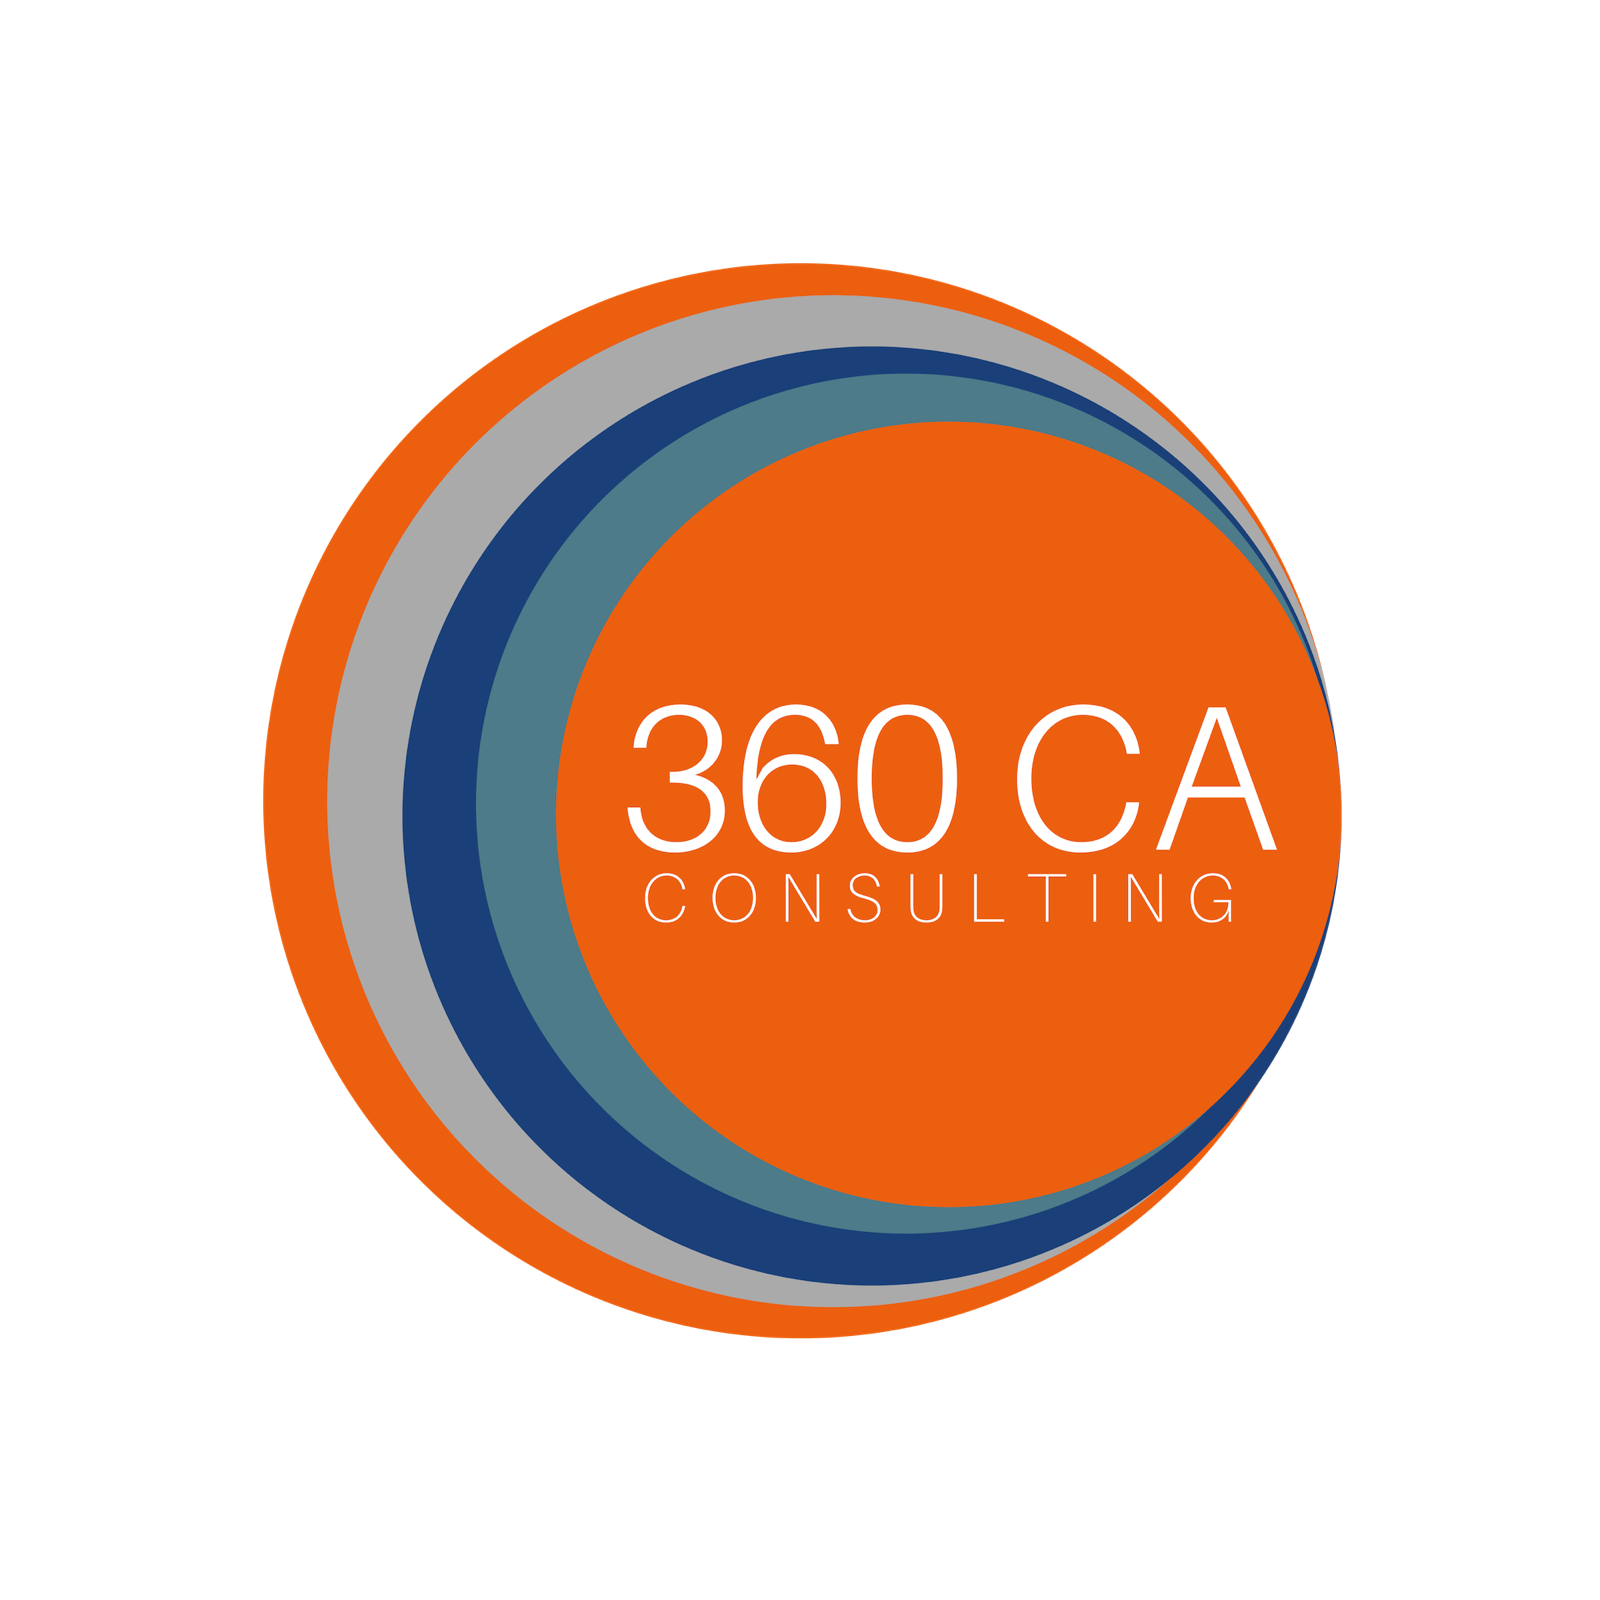 360 CA Consulting